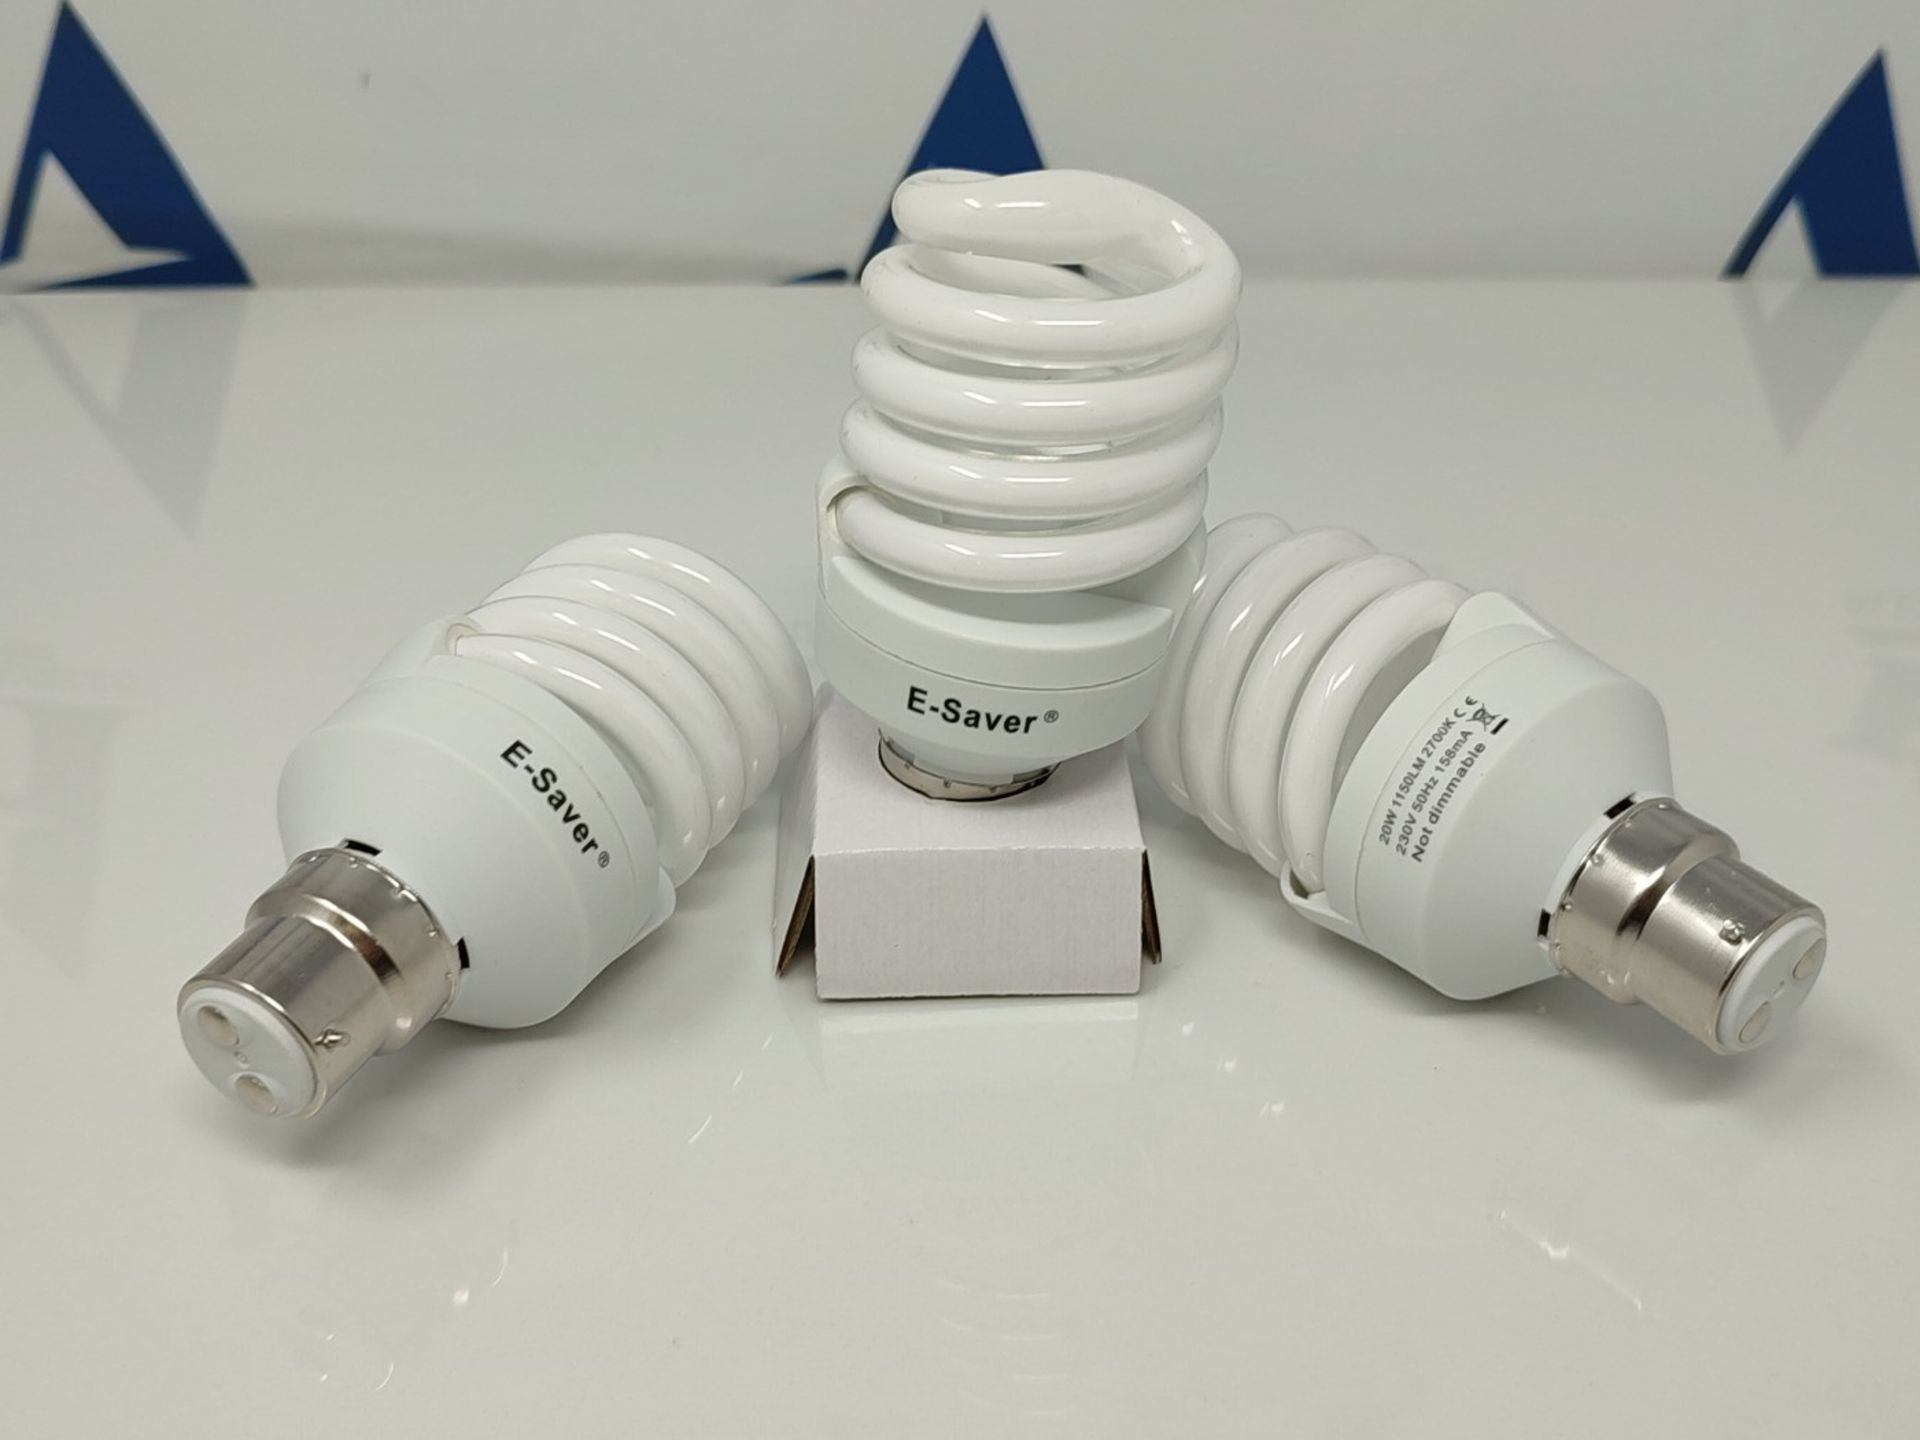 E-Saver - CFL Full Spiral - Energy Saving Light Bulbs - 20w = 100 Watt - (Pack of 3) - - Image 2 of 2